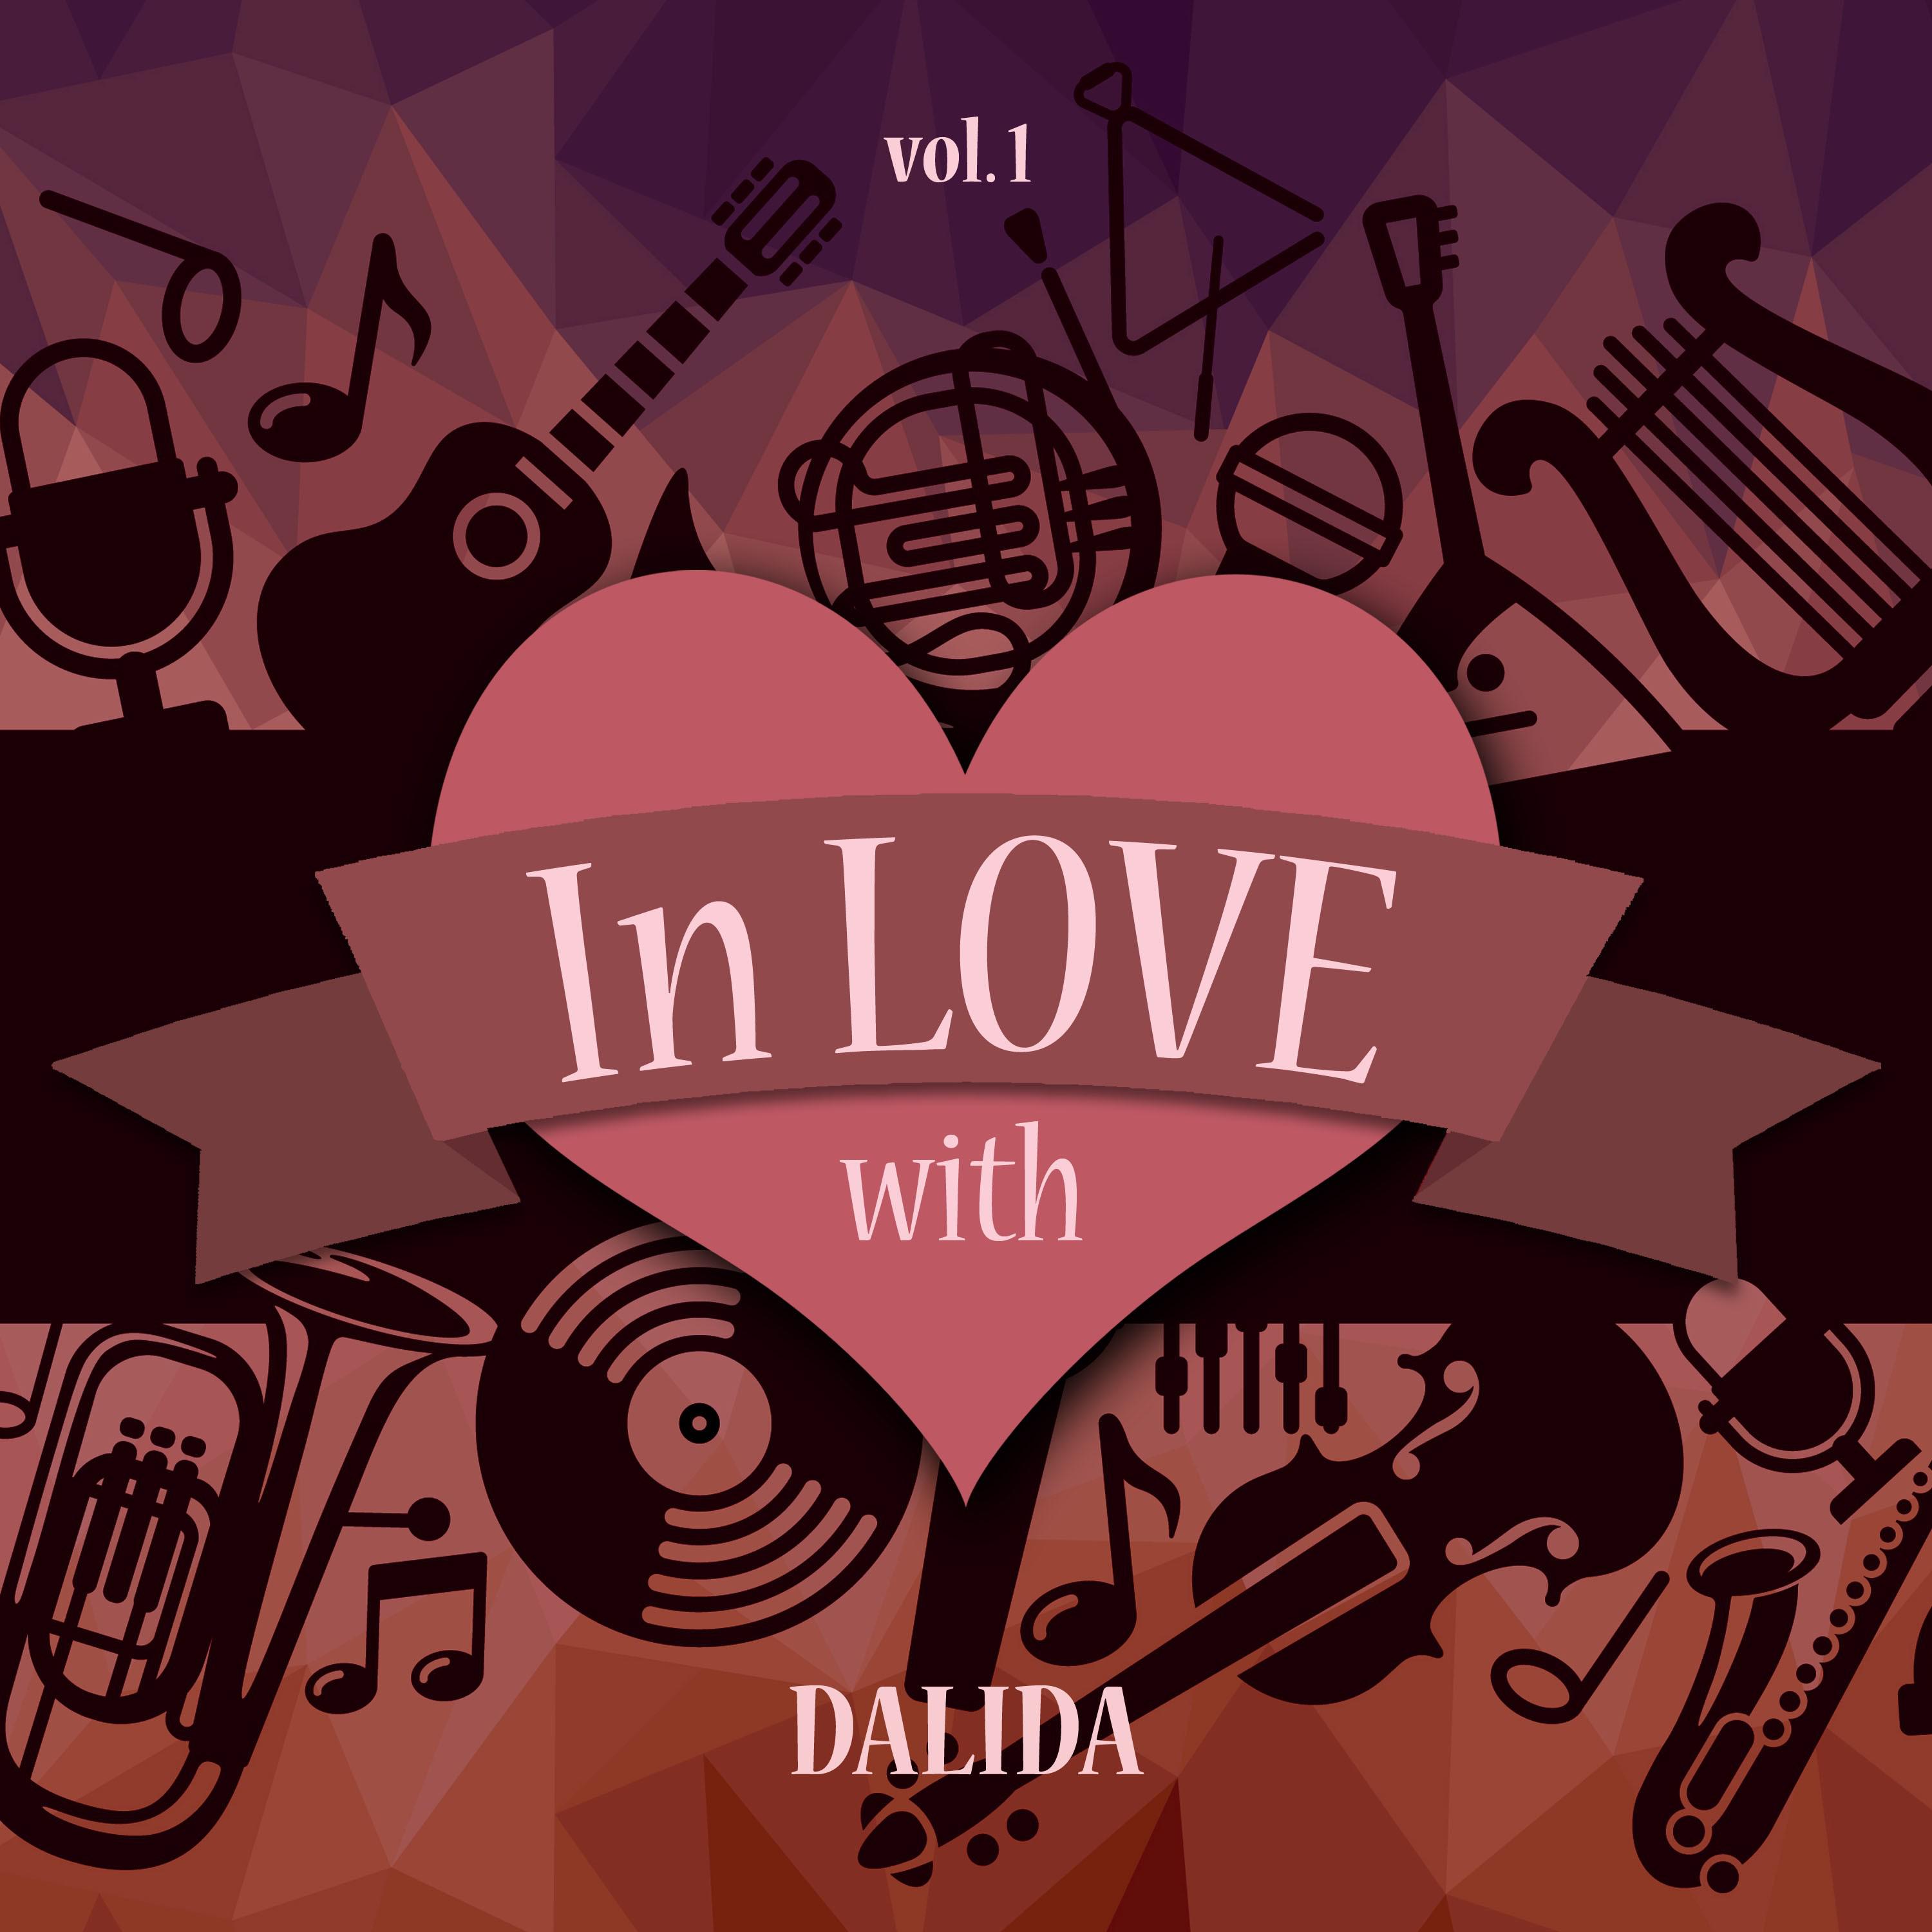 In Love with Dalida, Vol. 1